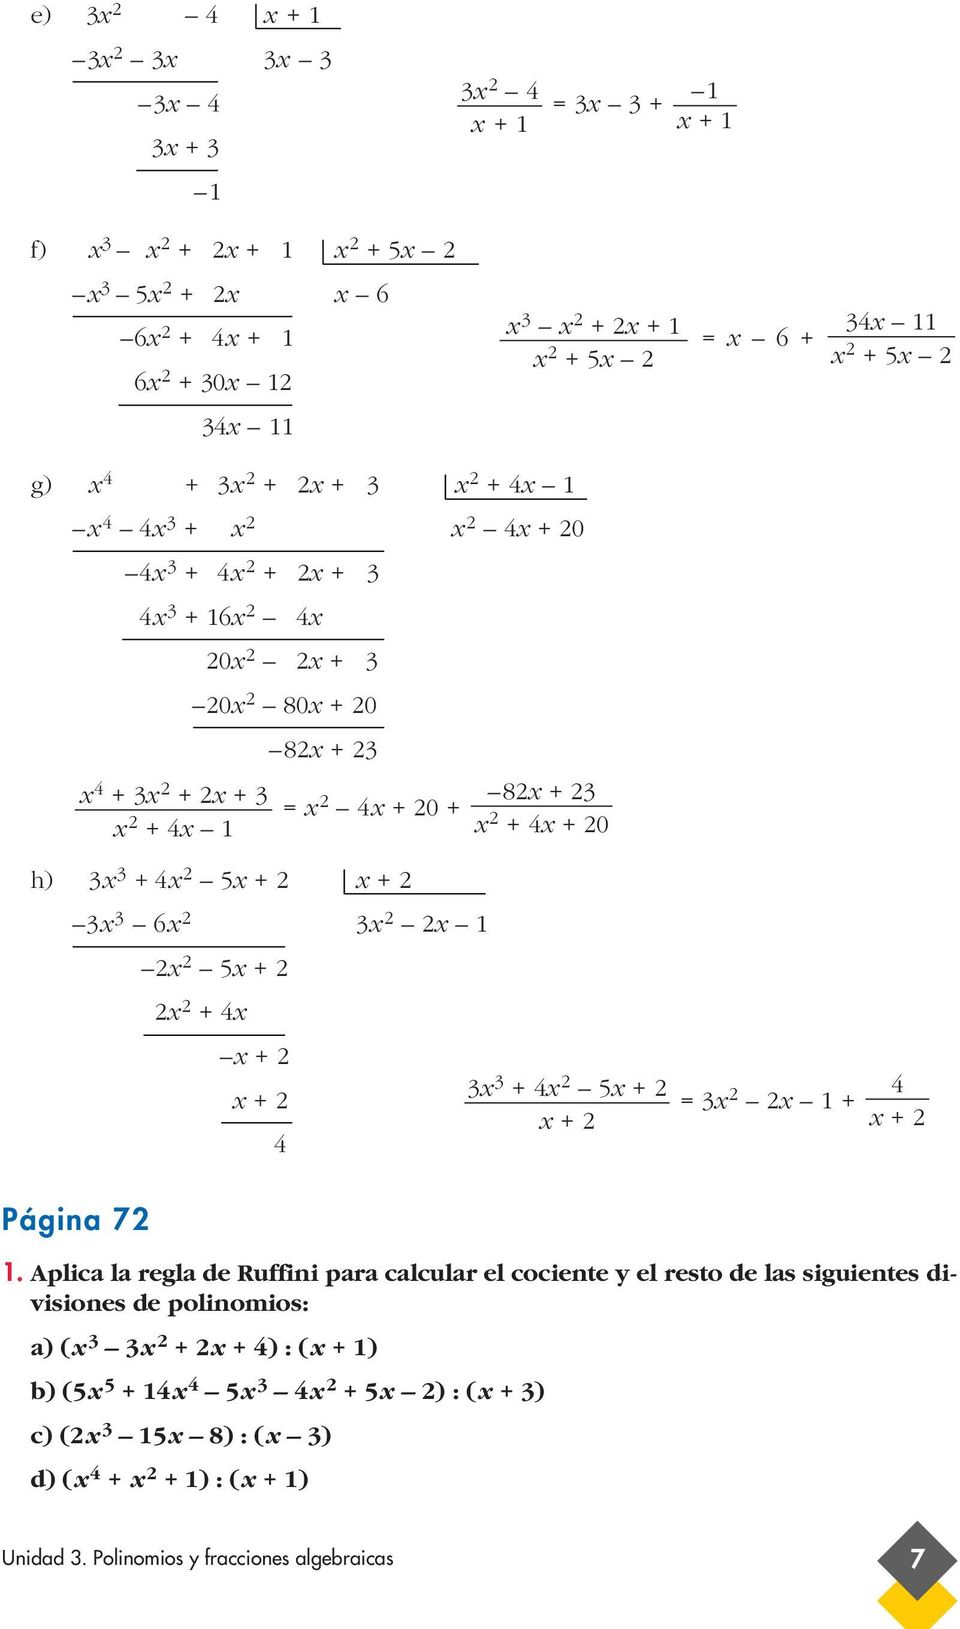 Aplica la regla de Ruffini para calcular el cociente y el resto de las siguientes divisiones de polinomios: a) ( +